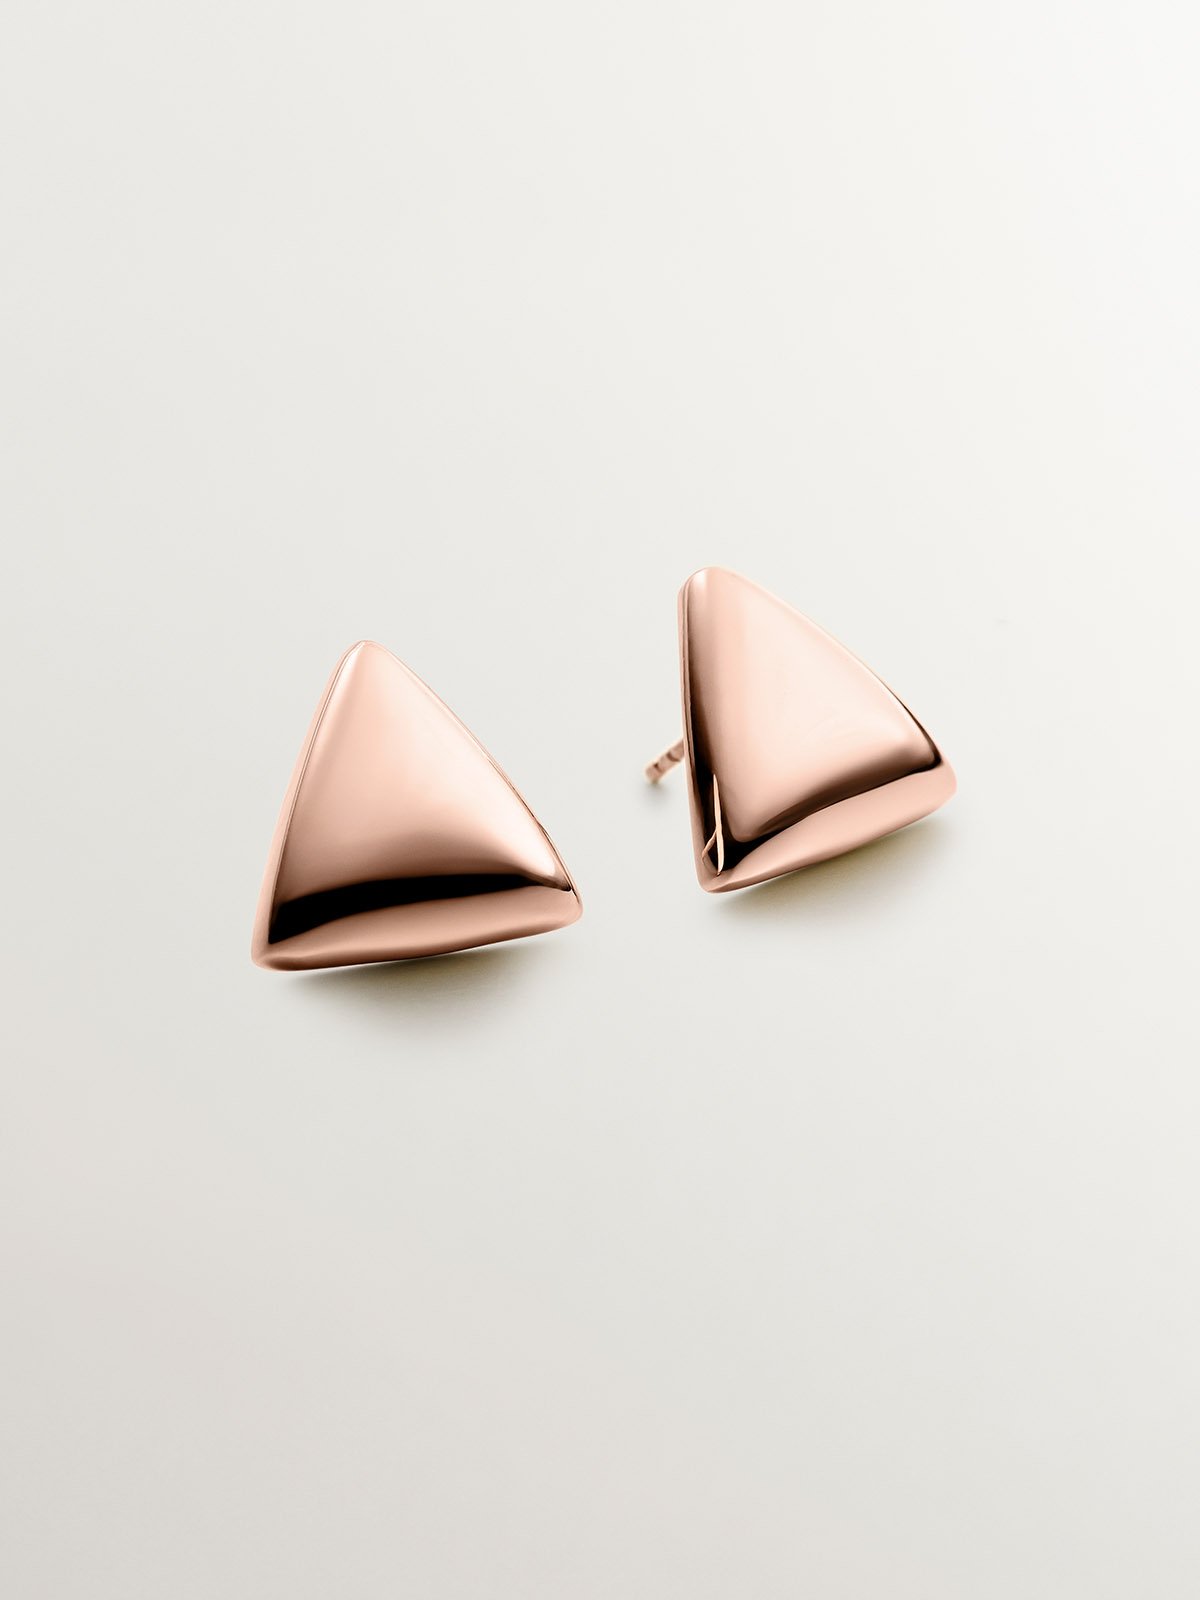 Boucles d'oreilles en argent 925 plaqué or rose 18 carats de forme triangulaire